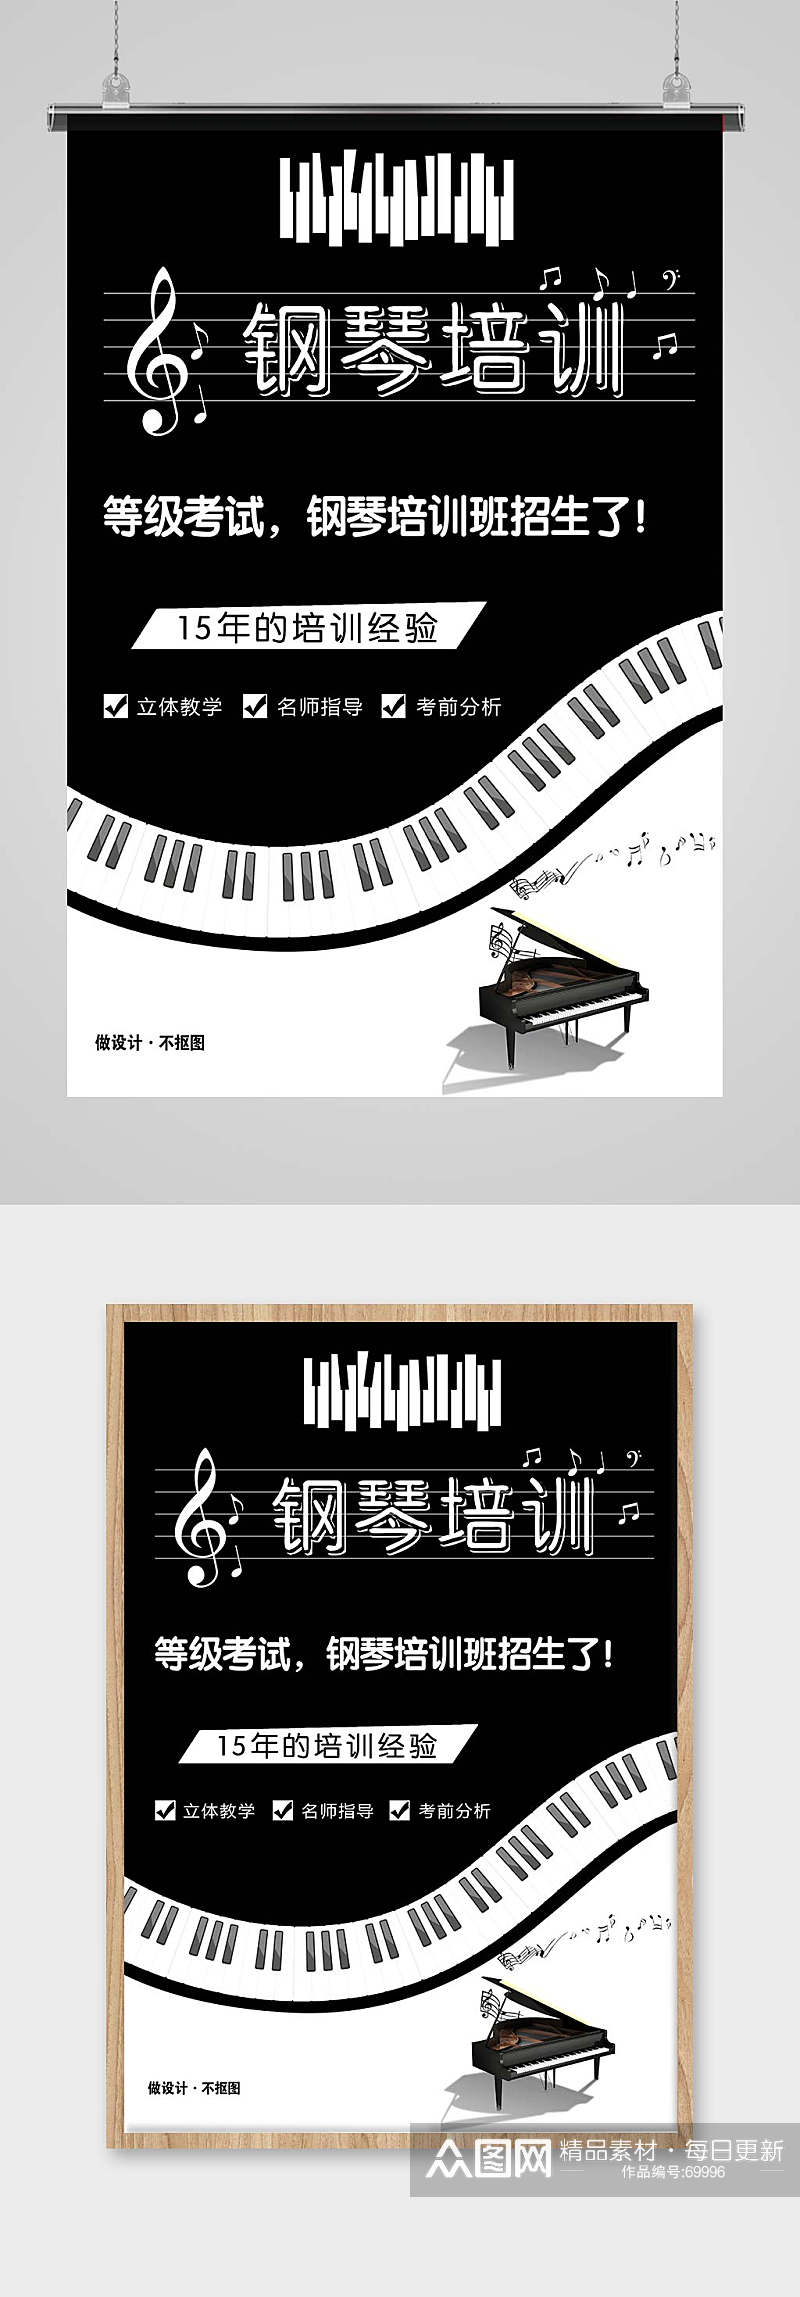 钢琴培训图片素材